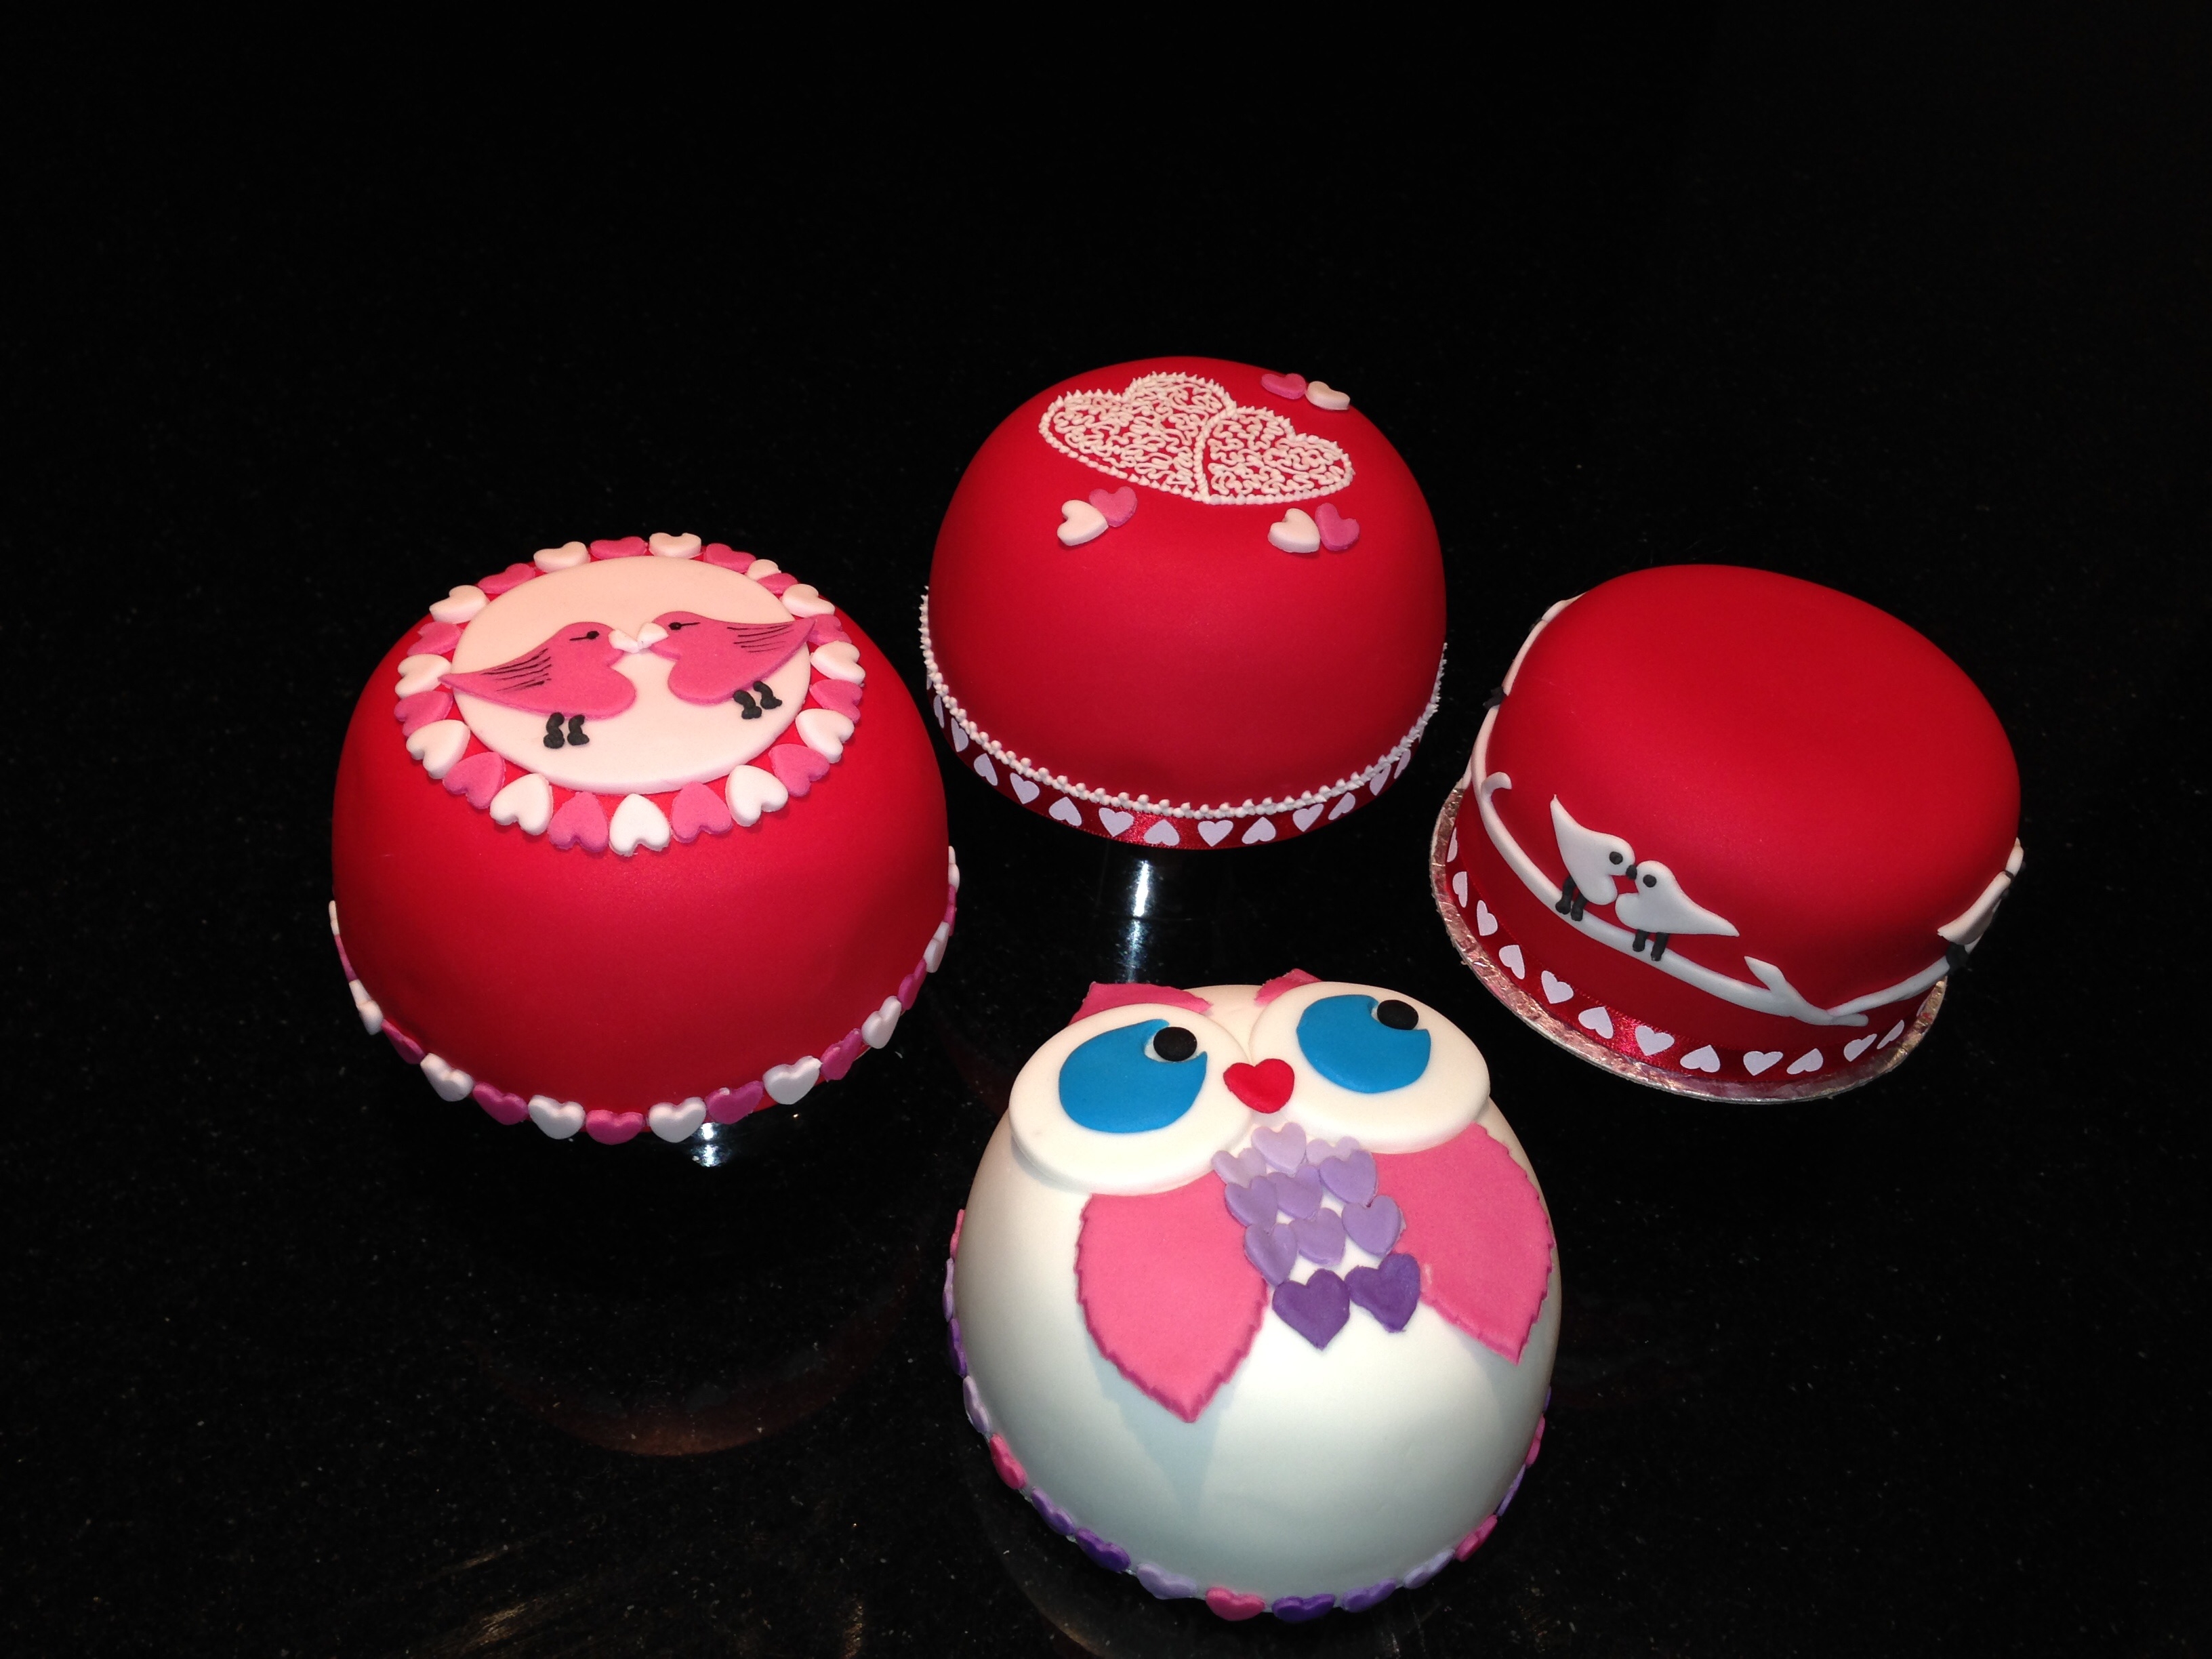 Mini Valentine cakes